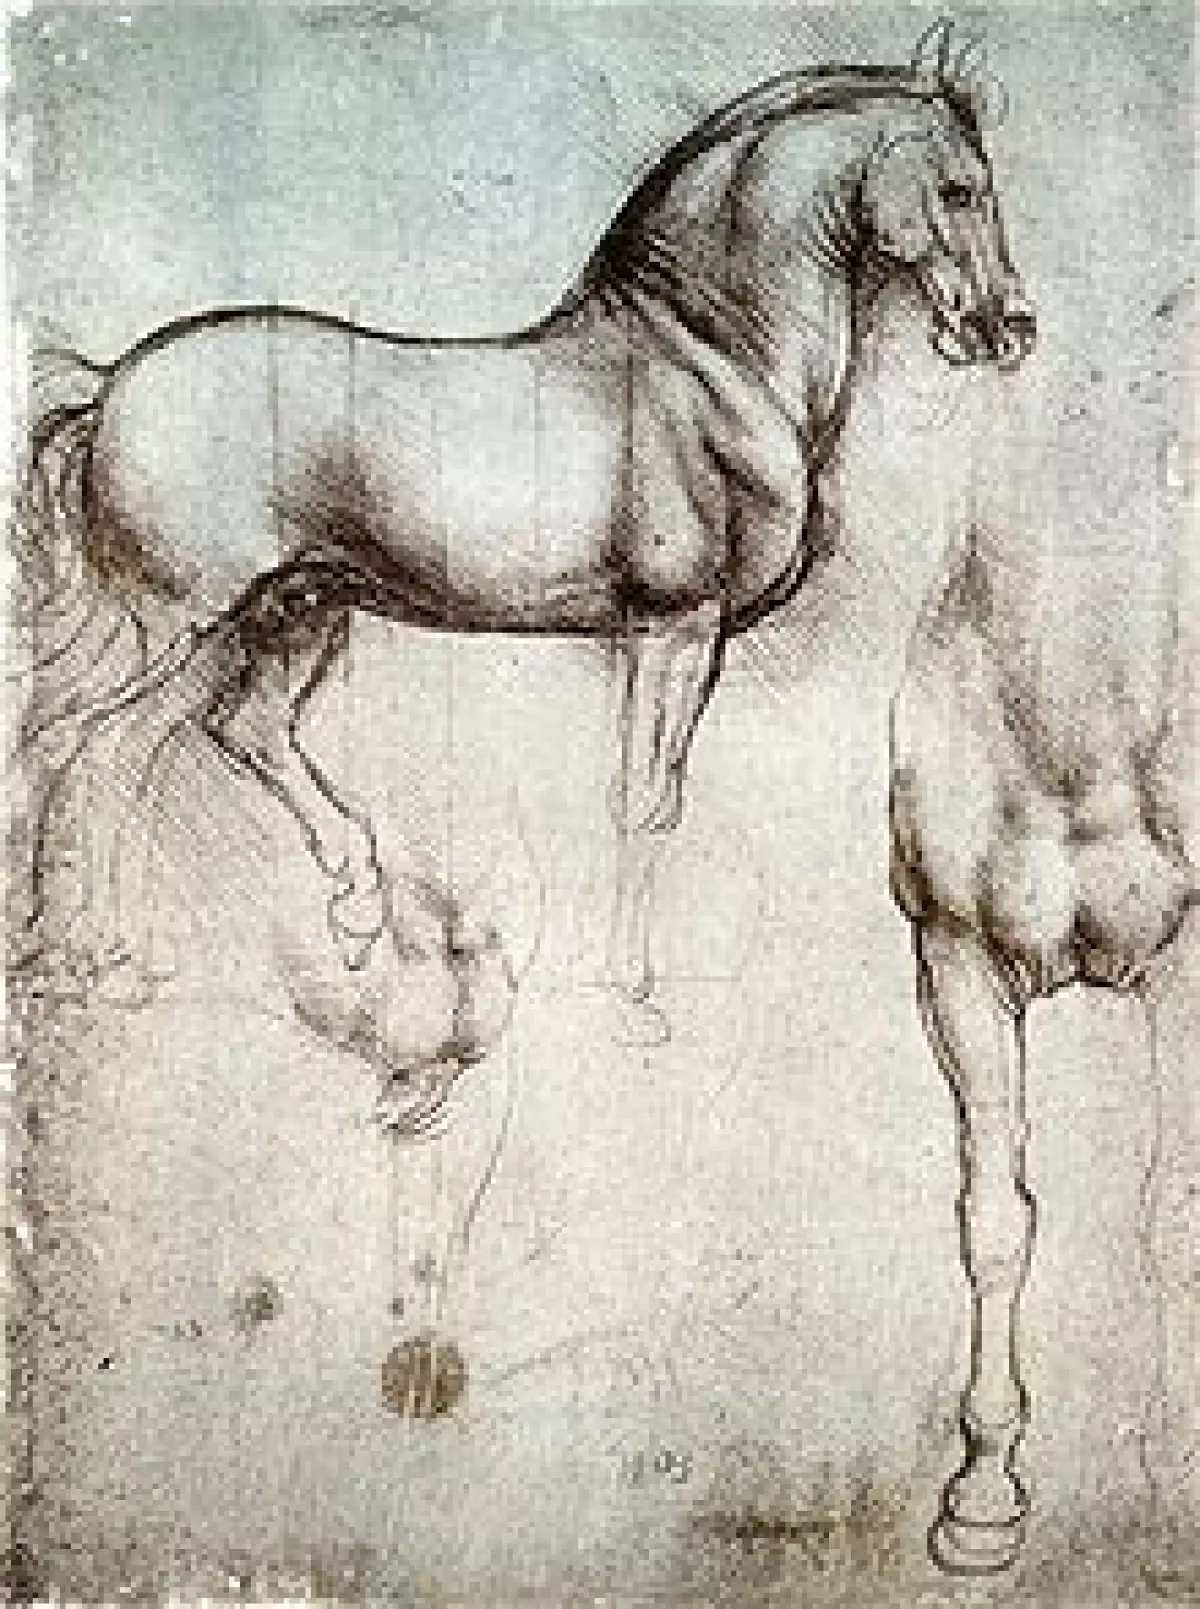 Étude d'un cheval par Léonard de Vinci